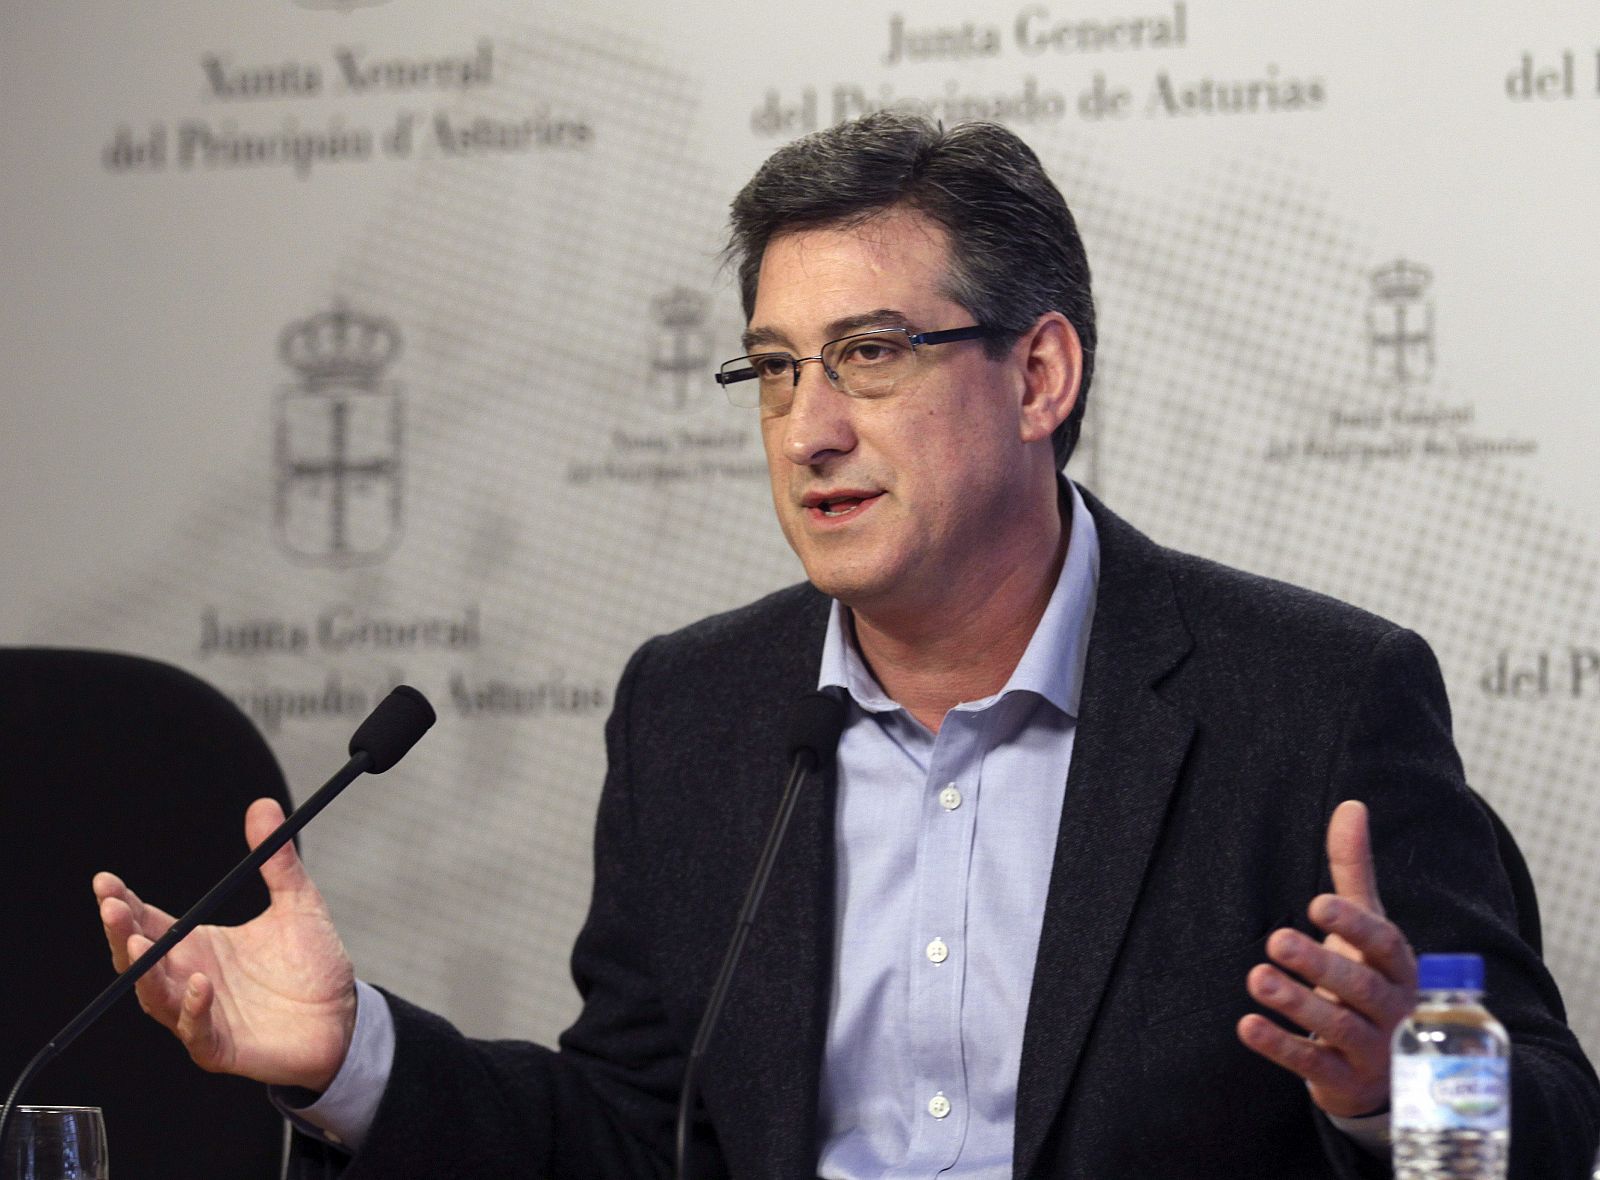 El exdiputado autonómico de UPyD en Asturias, Ignacio Prendes, ahora candidato en la lista de Ciudadanos.